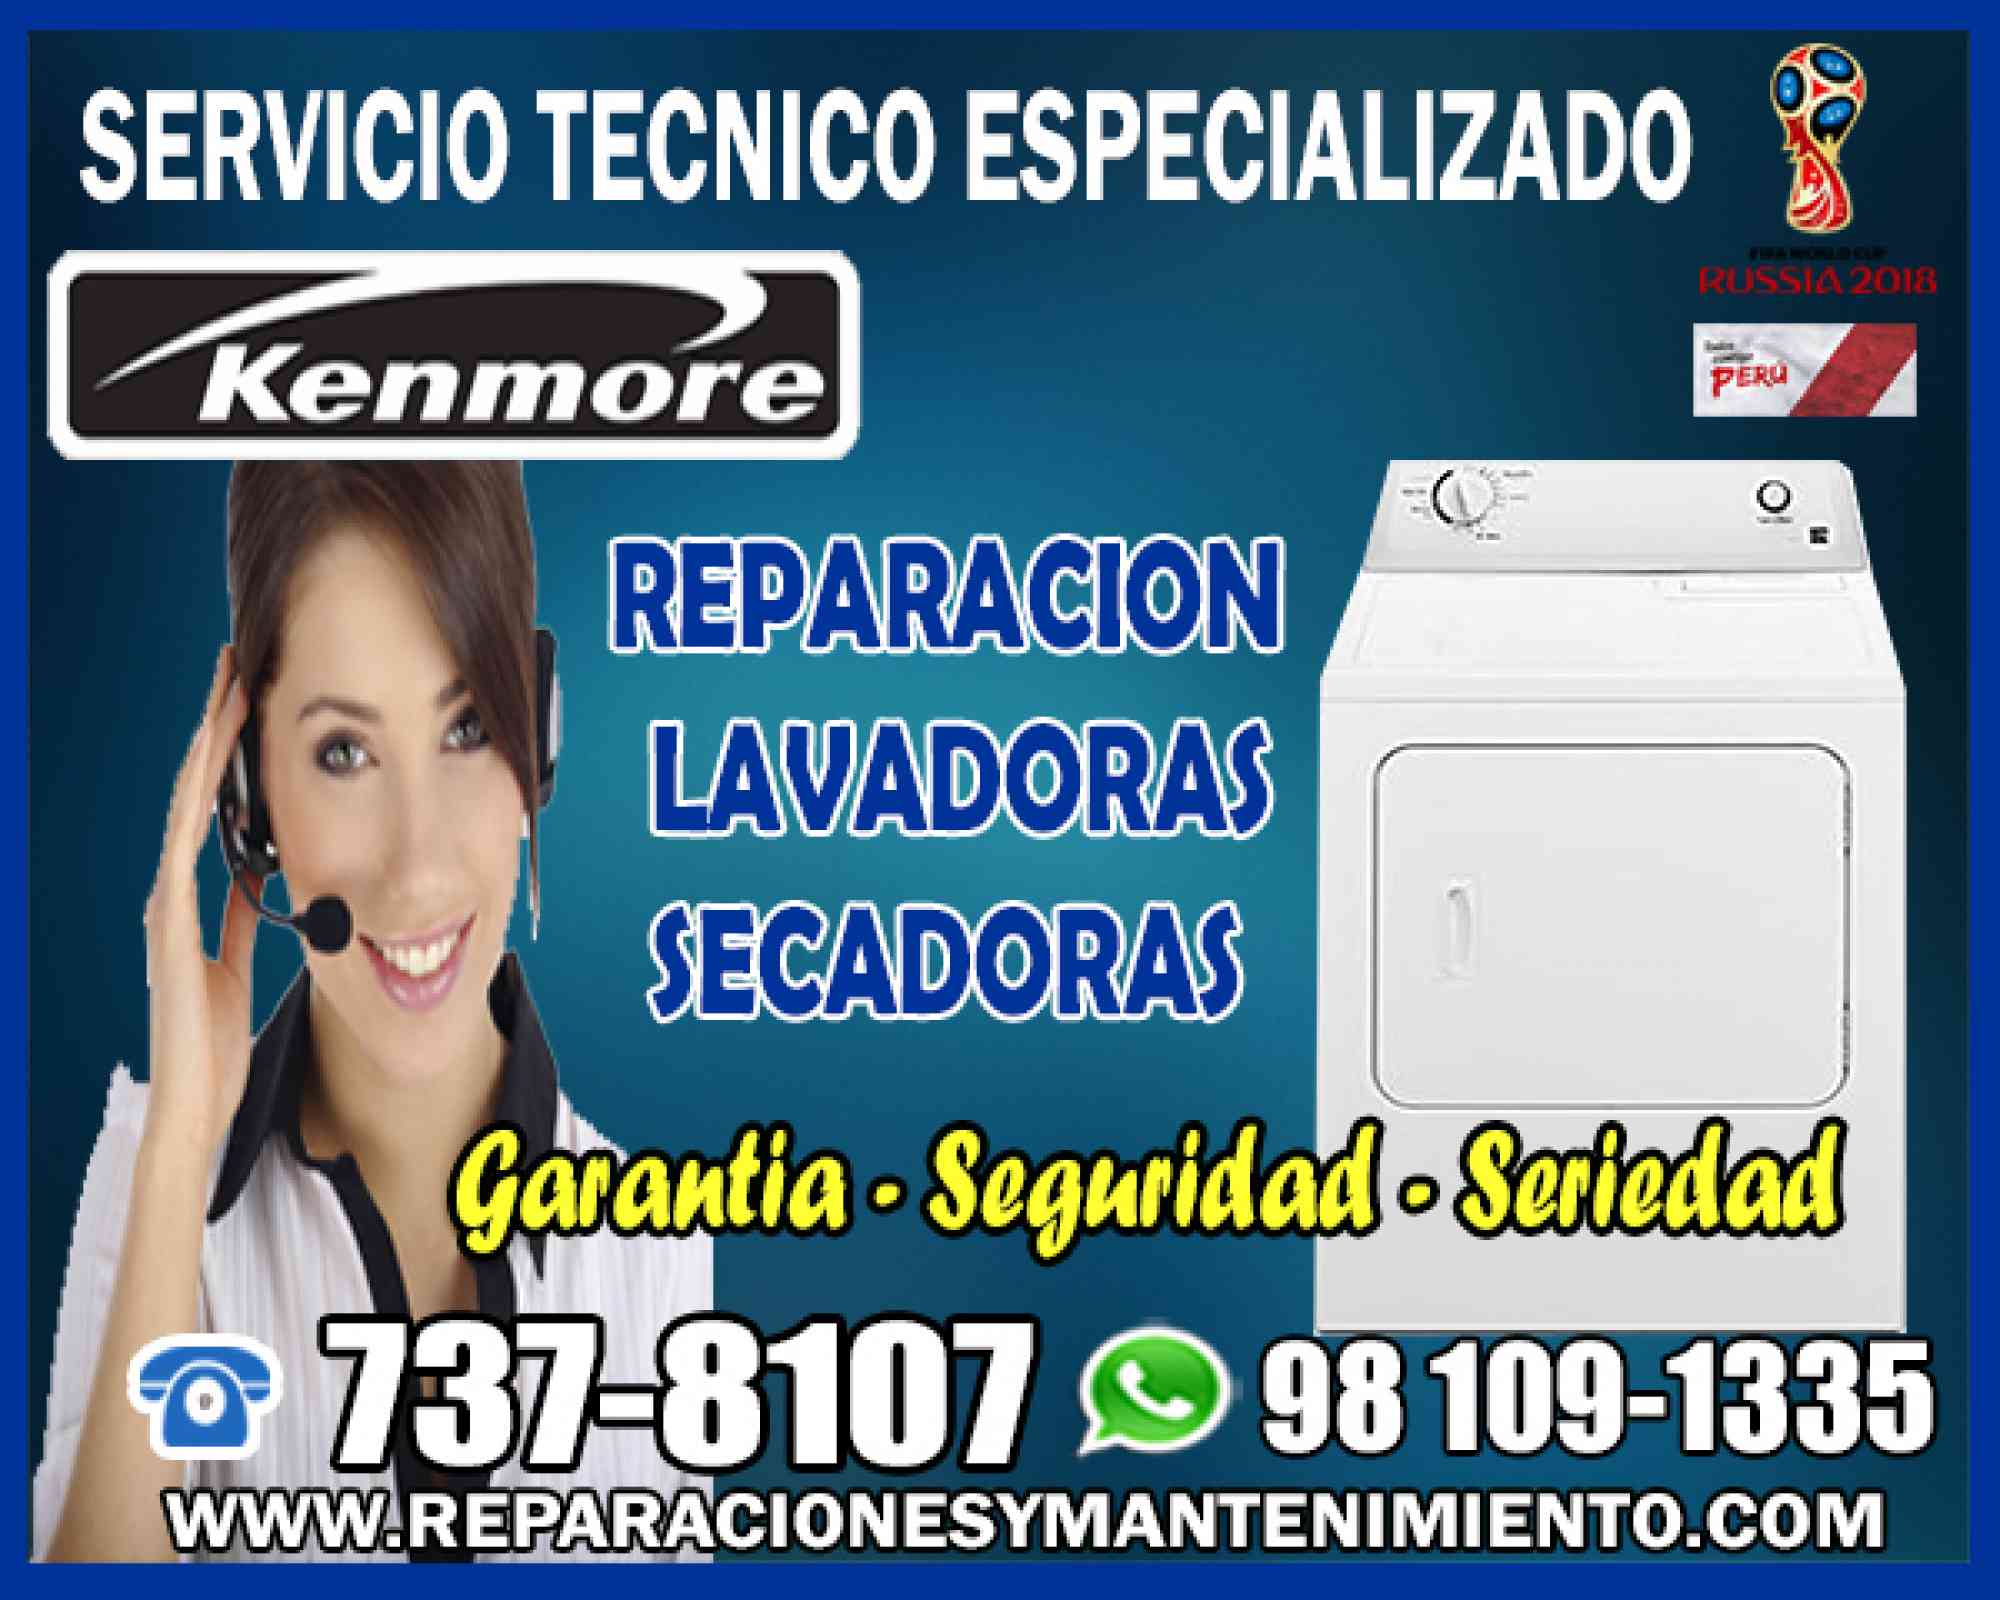 Anuncios de Servicios - Anuncios Clasificados Gratis - Todoclasificados, 98109133Plus! Reparación de Lavadoras KENMORE